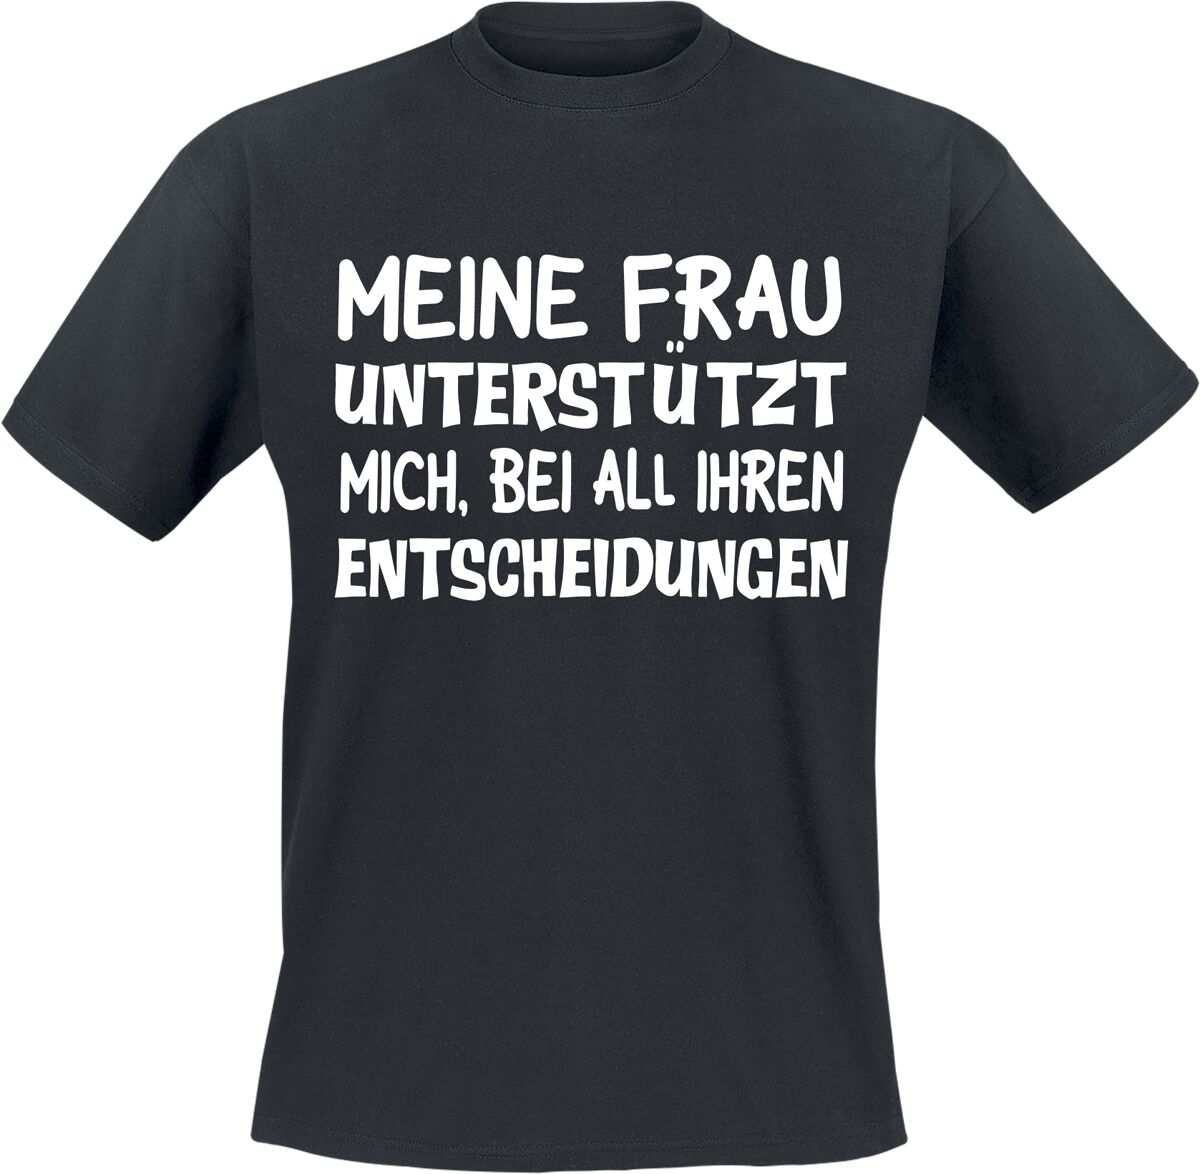 Sprüche T-Shirt - Meine Frau unterstützt mich, bei all ihren Entscheidungen - M bis 3XL - für Männer - Größe M - schwarz